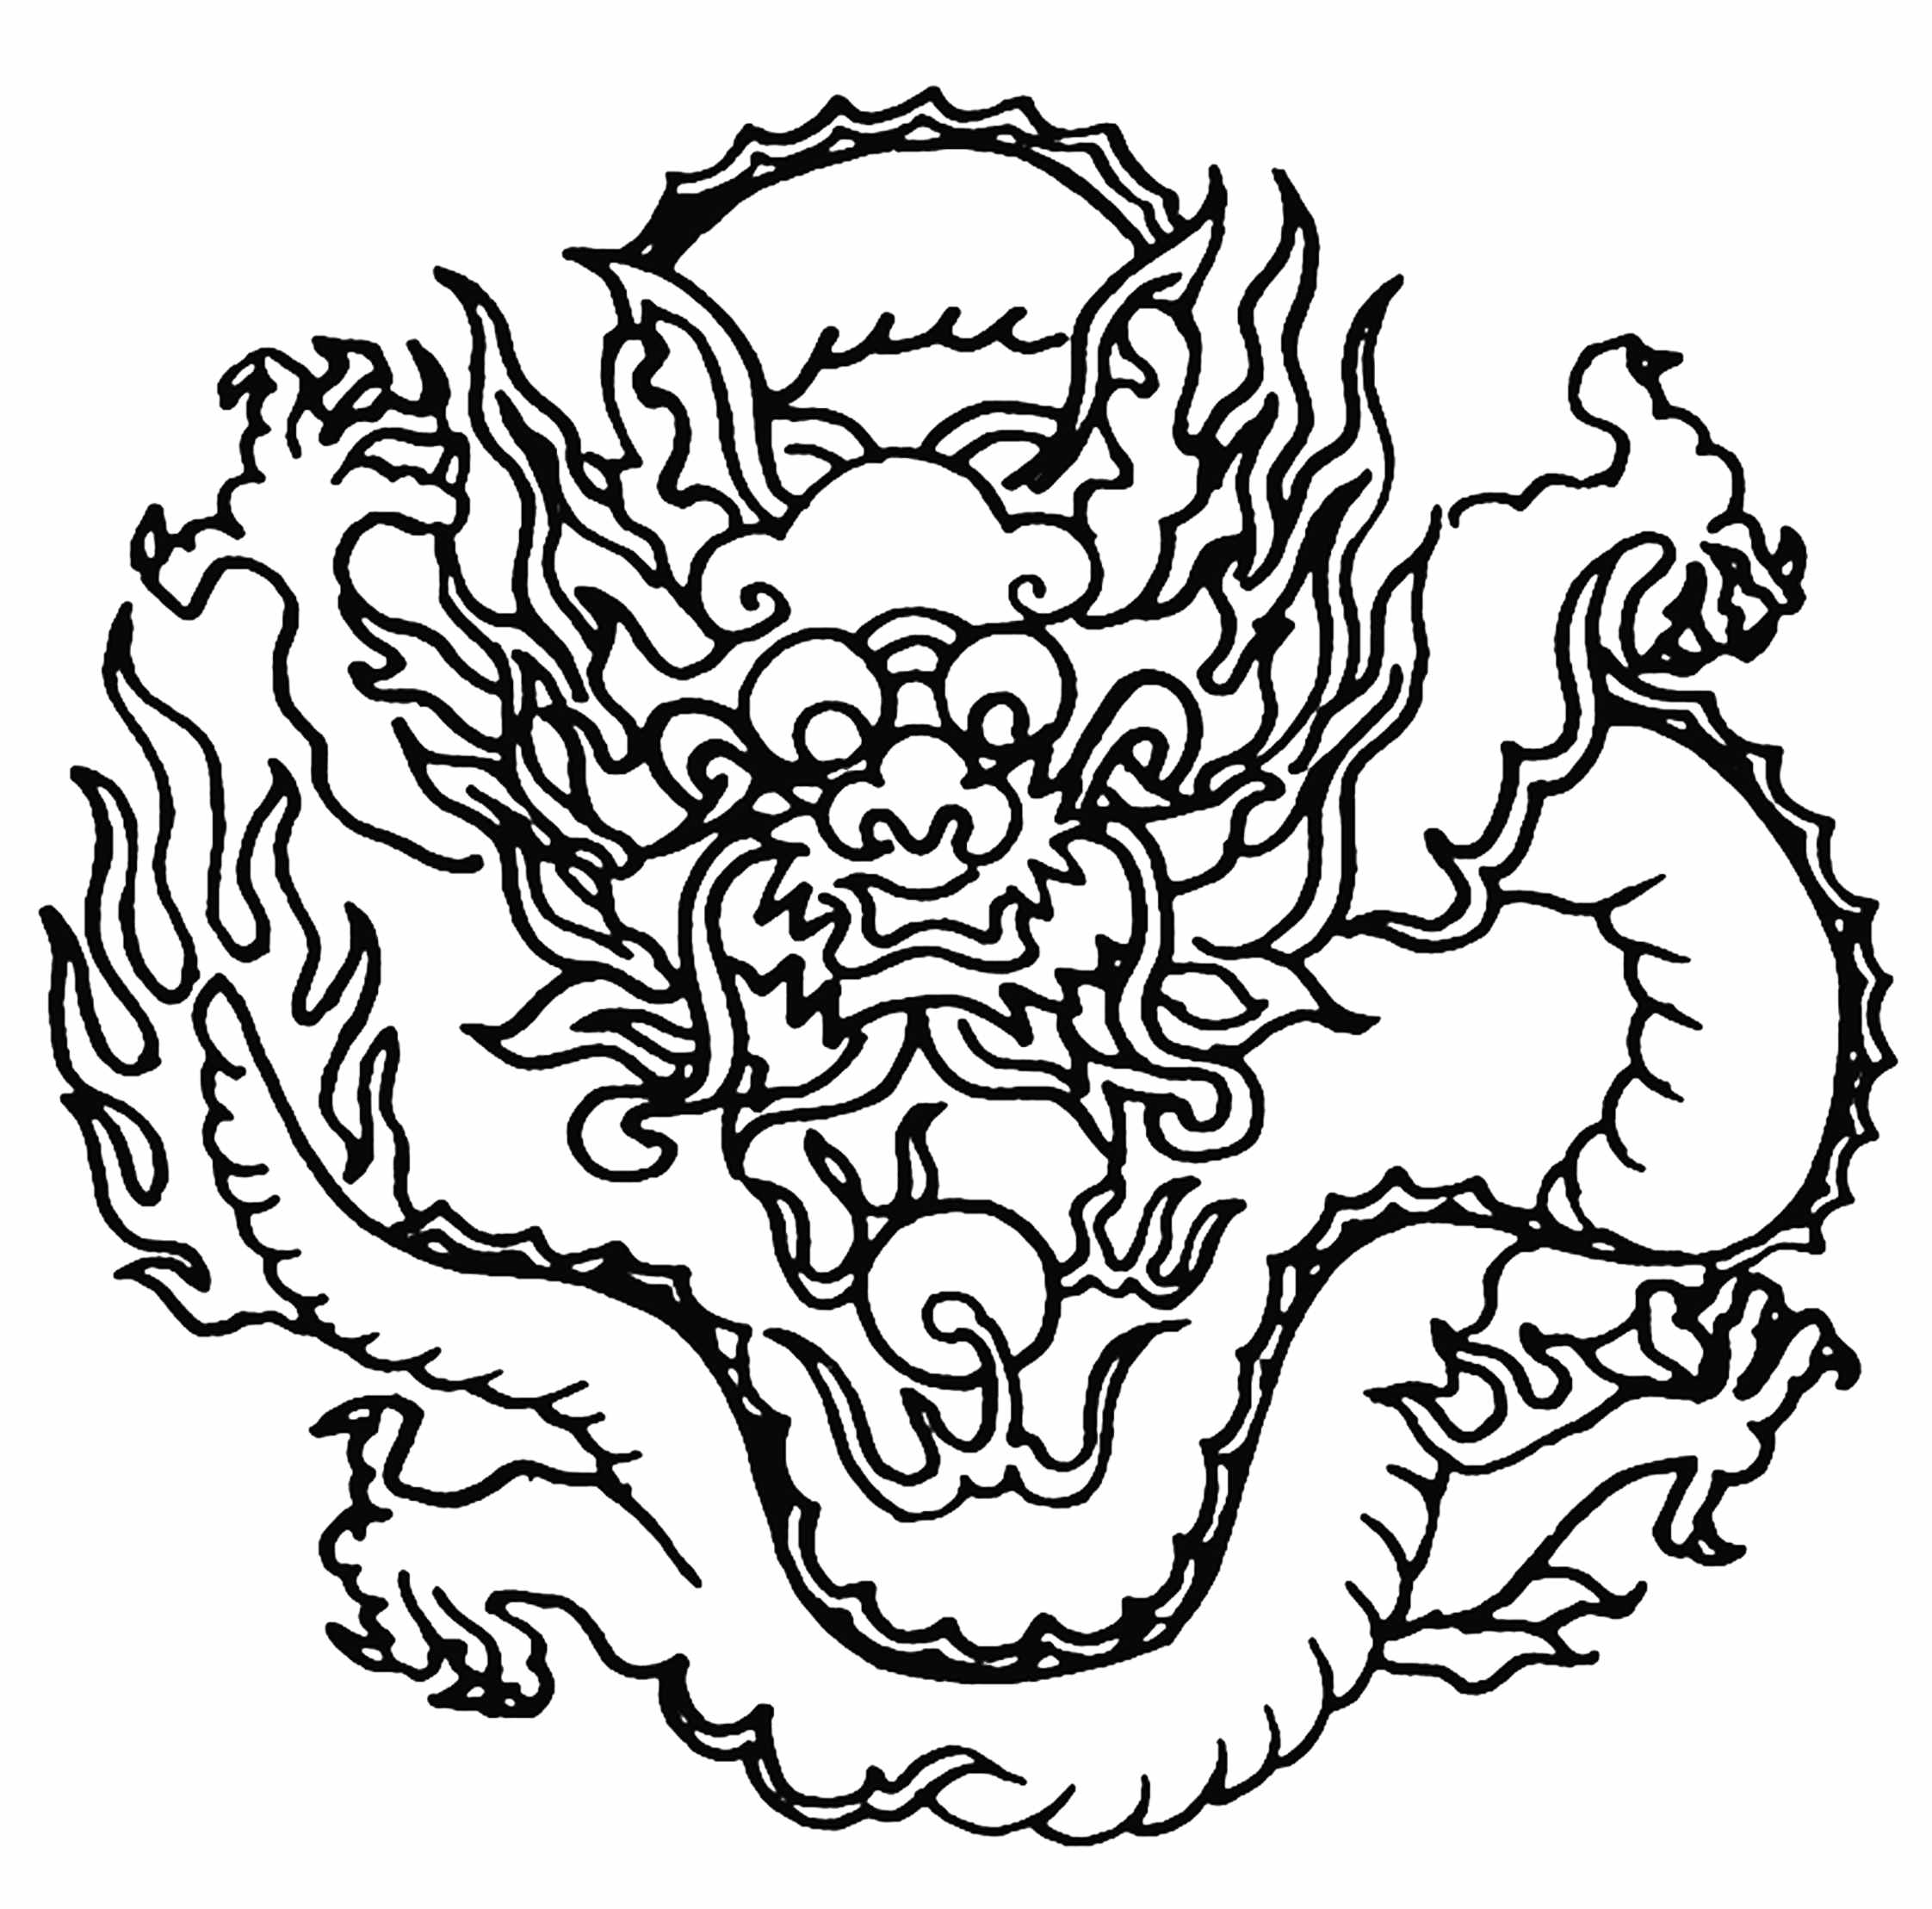 中国古代图案第二弹龙图案